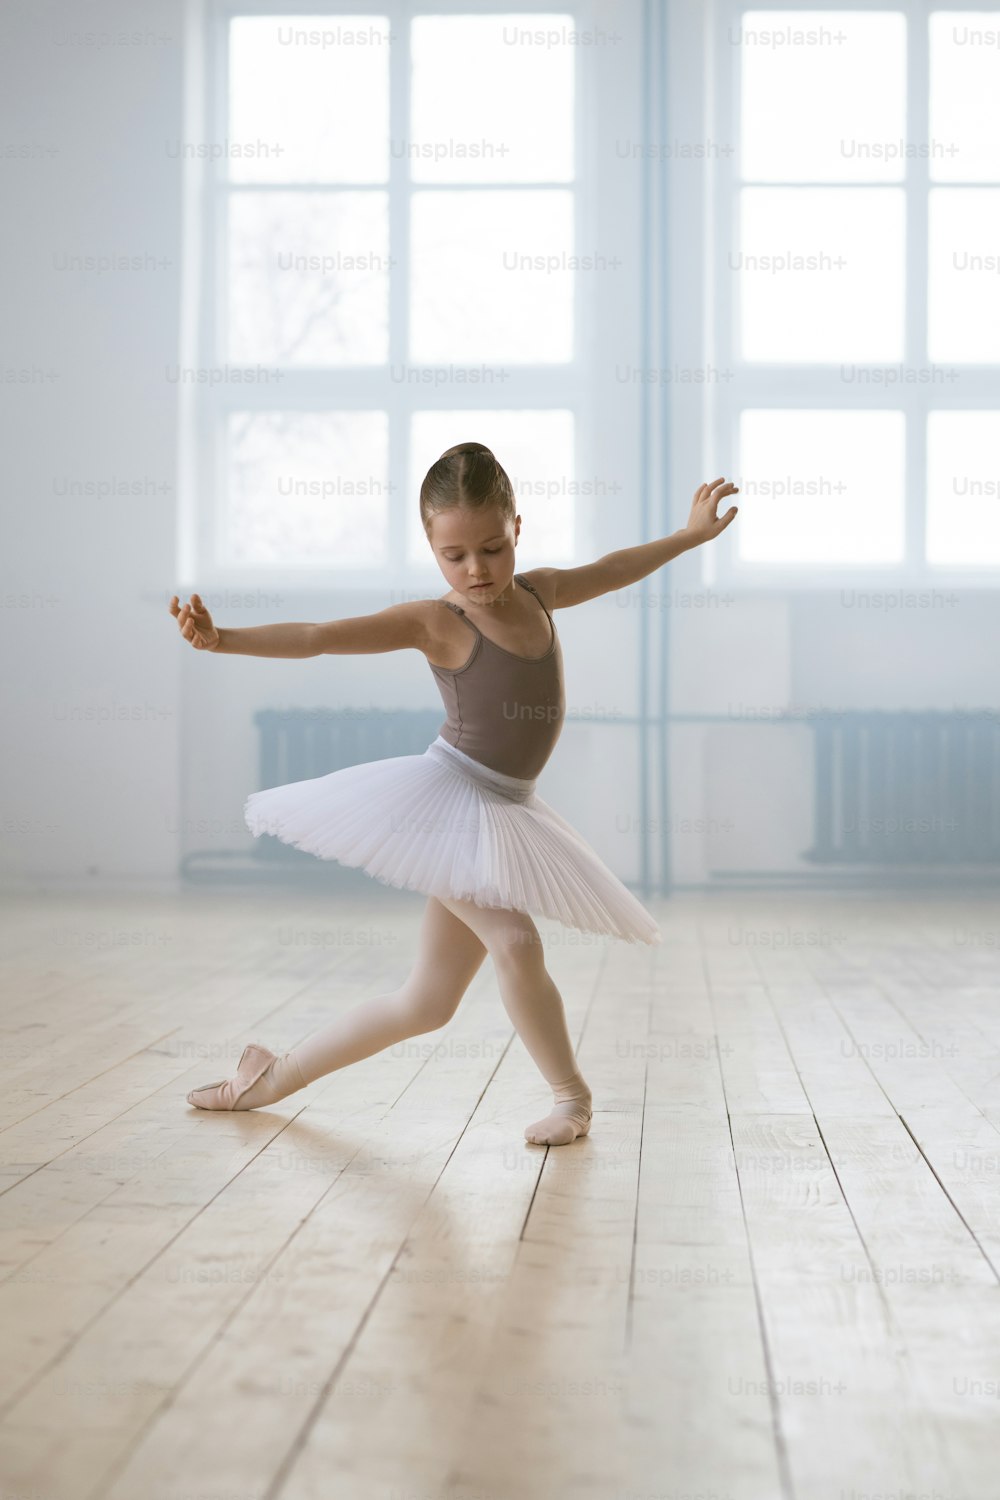 댄스 스쿨에서 혼자 발레 댄스를 수행하는 투투의 어린 소녀